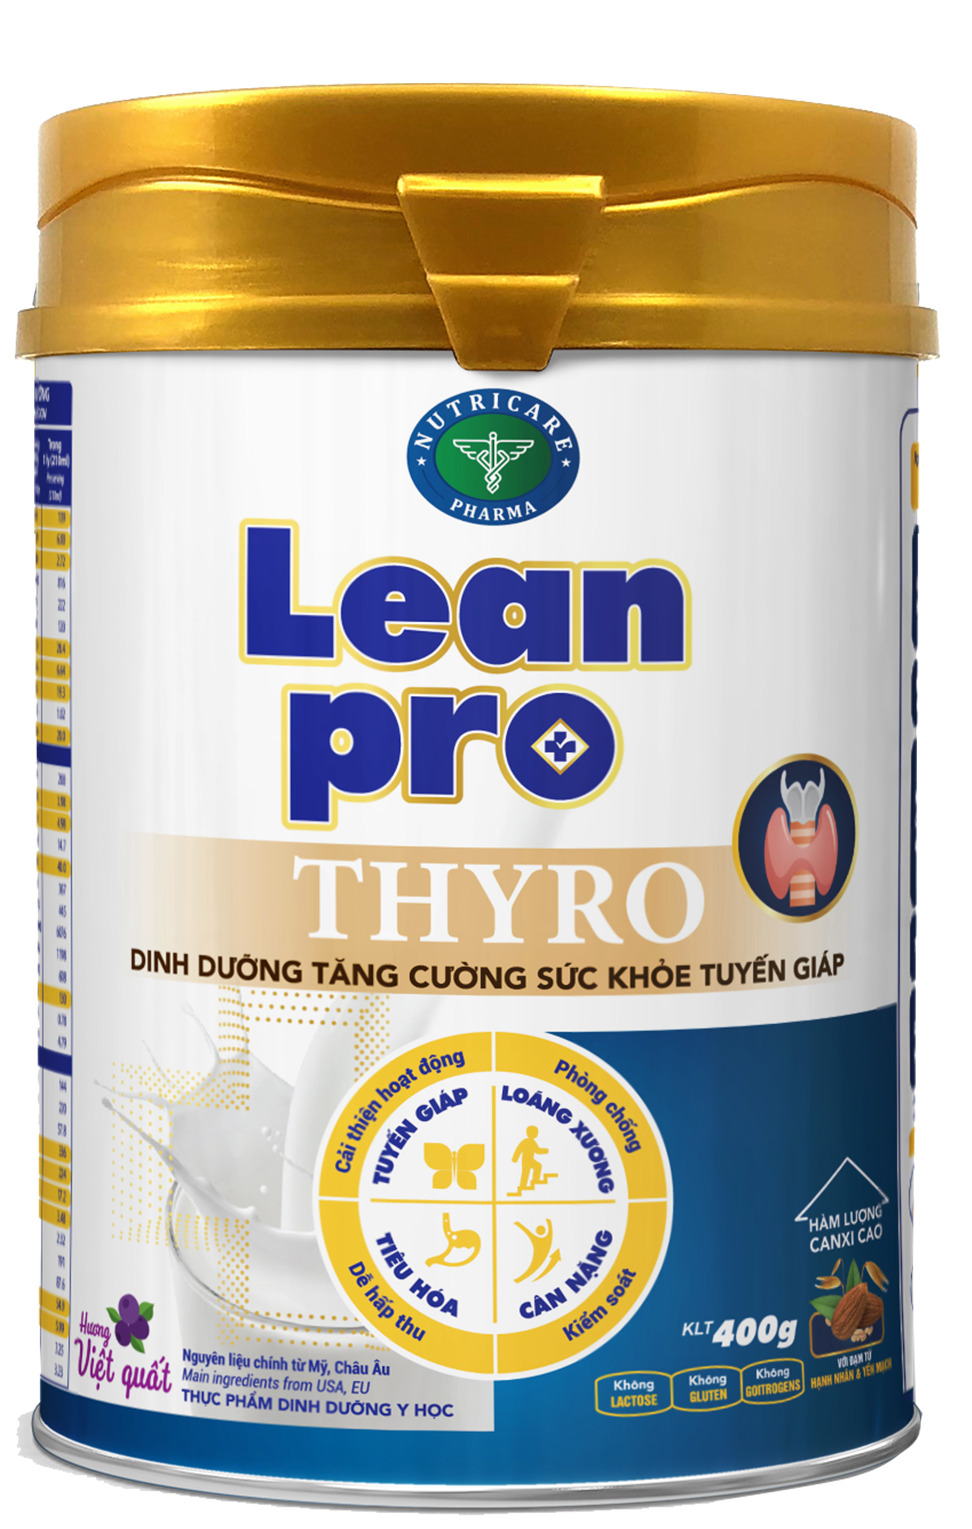 Sữa Lean Pro Thyro - 900g, cho người trong chế độ ăn kiêng i-ốt